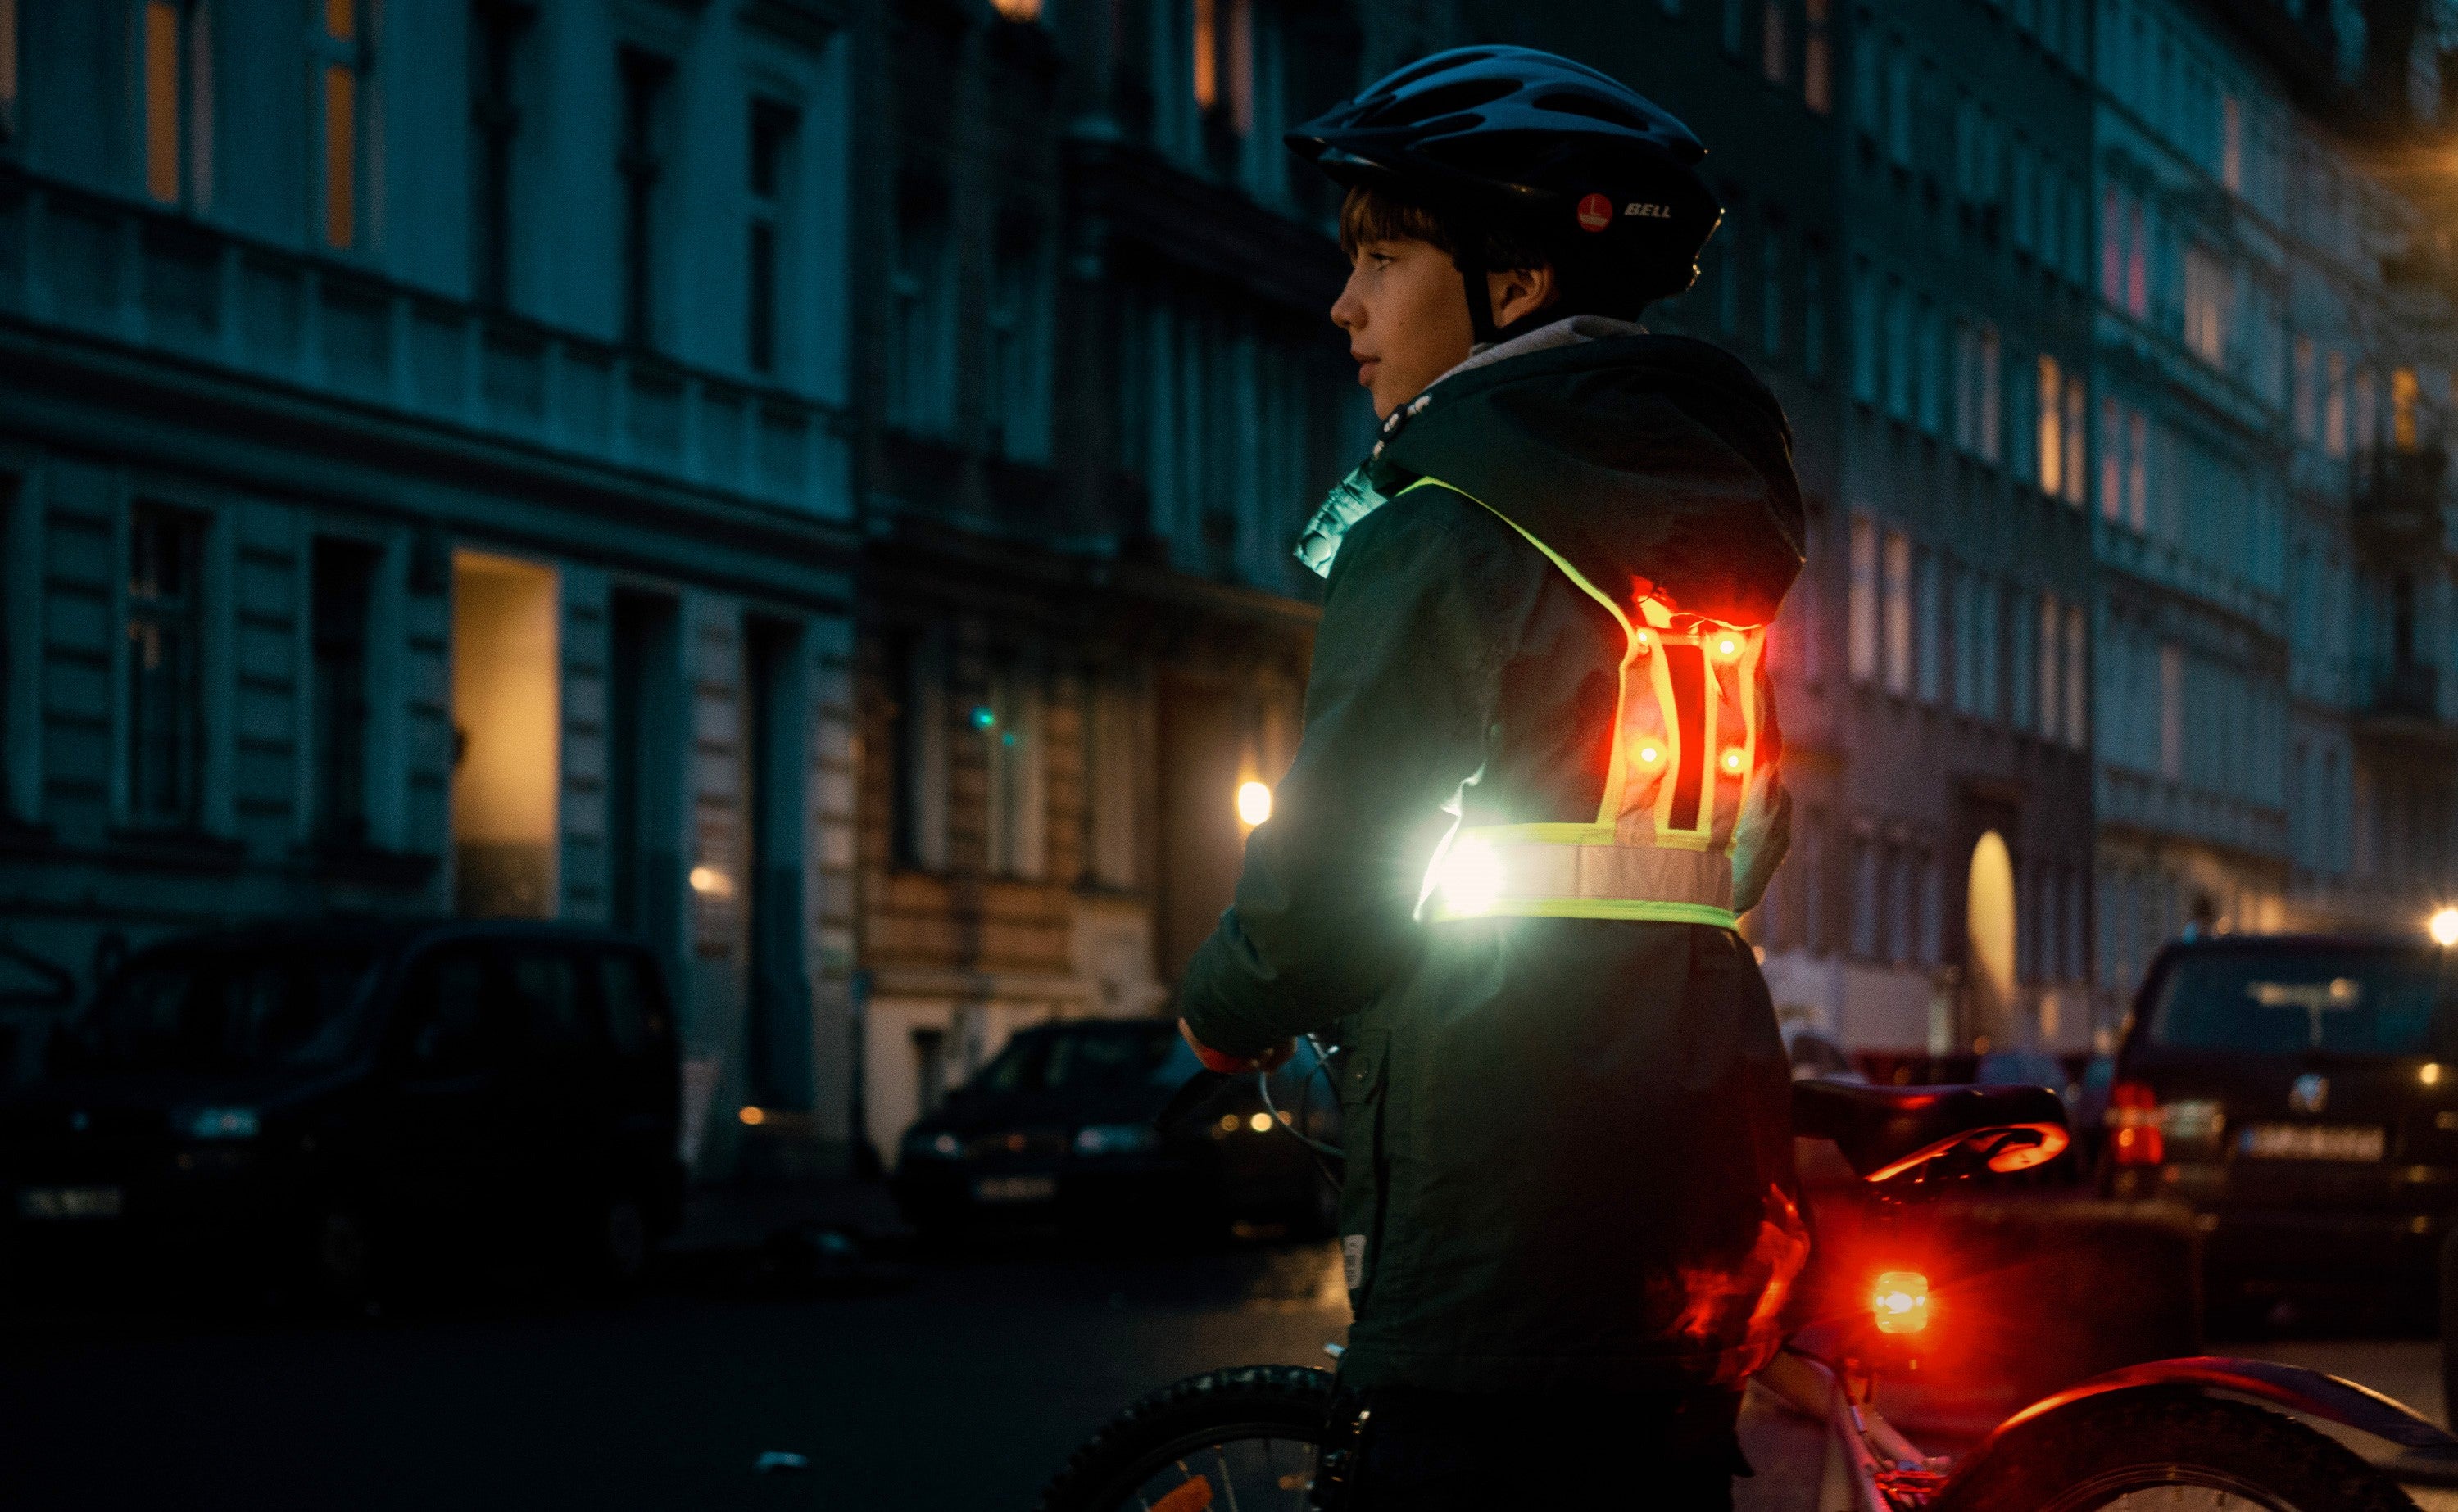 LED Warnwesten für Kinder und Fahrradfahrer